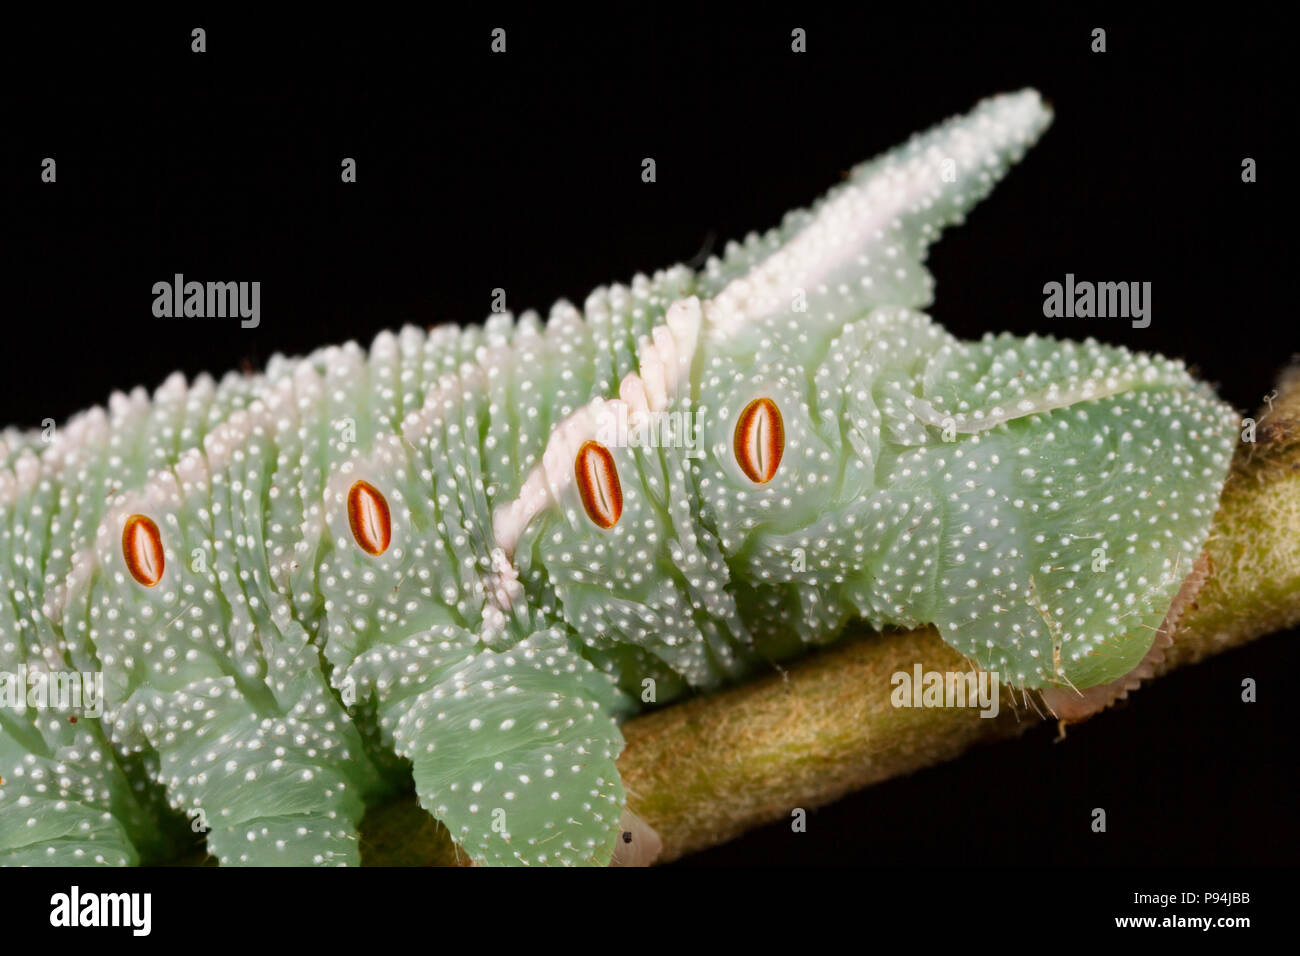 Immagine che mostra l'estremità posteriore di un eyed hawkmoth caterpillar, Smerinthus ocellata, fotografato in un studio in Nord Inghilterra Dorset Regno Unito GB. L'ovale, o Foto Stock